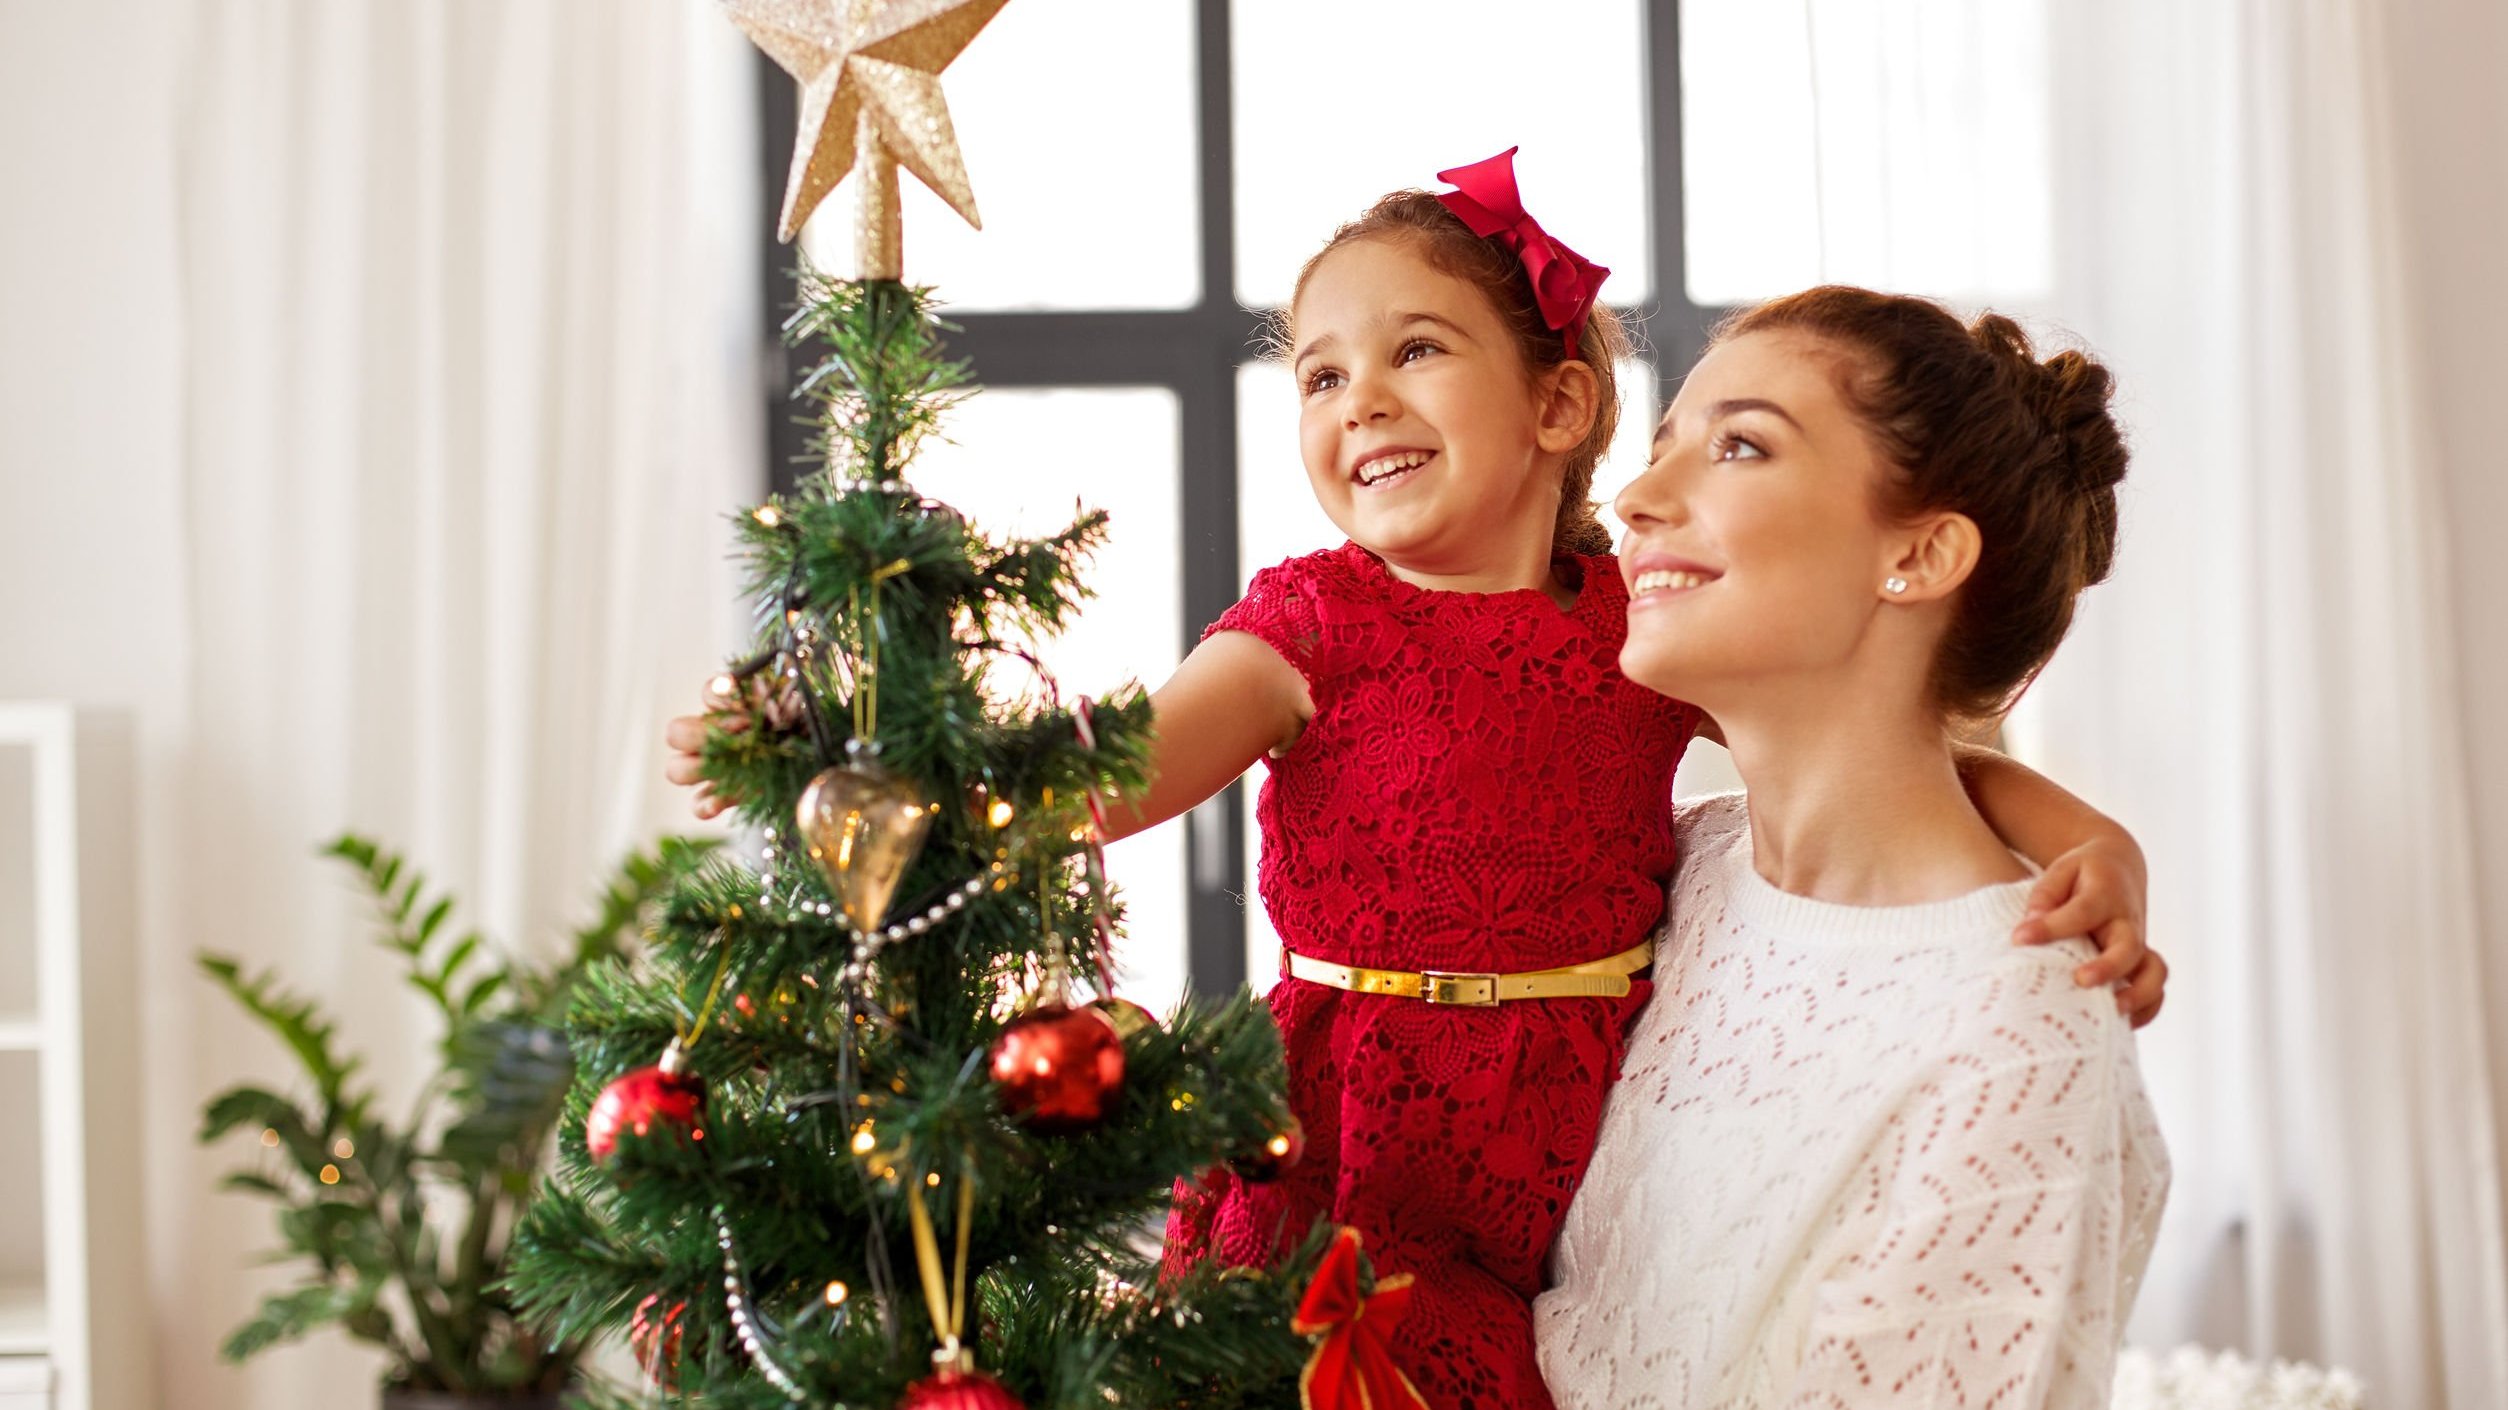 Mulher segurando menina no colo em frente de árvore de Natal. A menina está colocando uma estrela no topo da árvore.